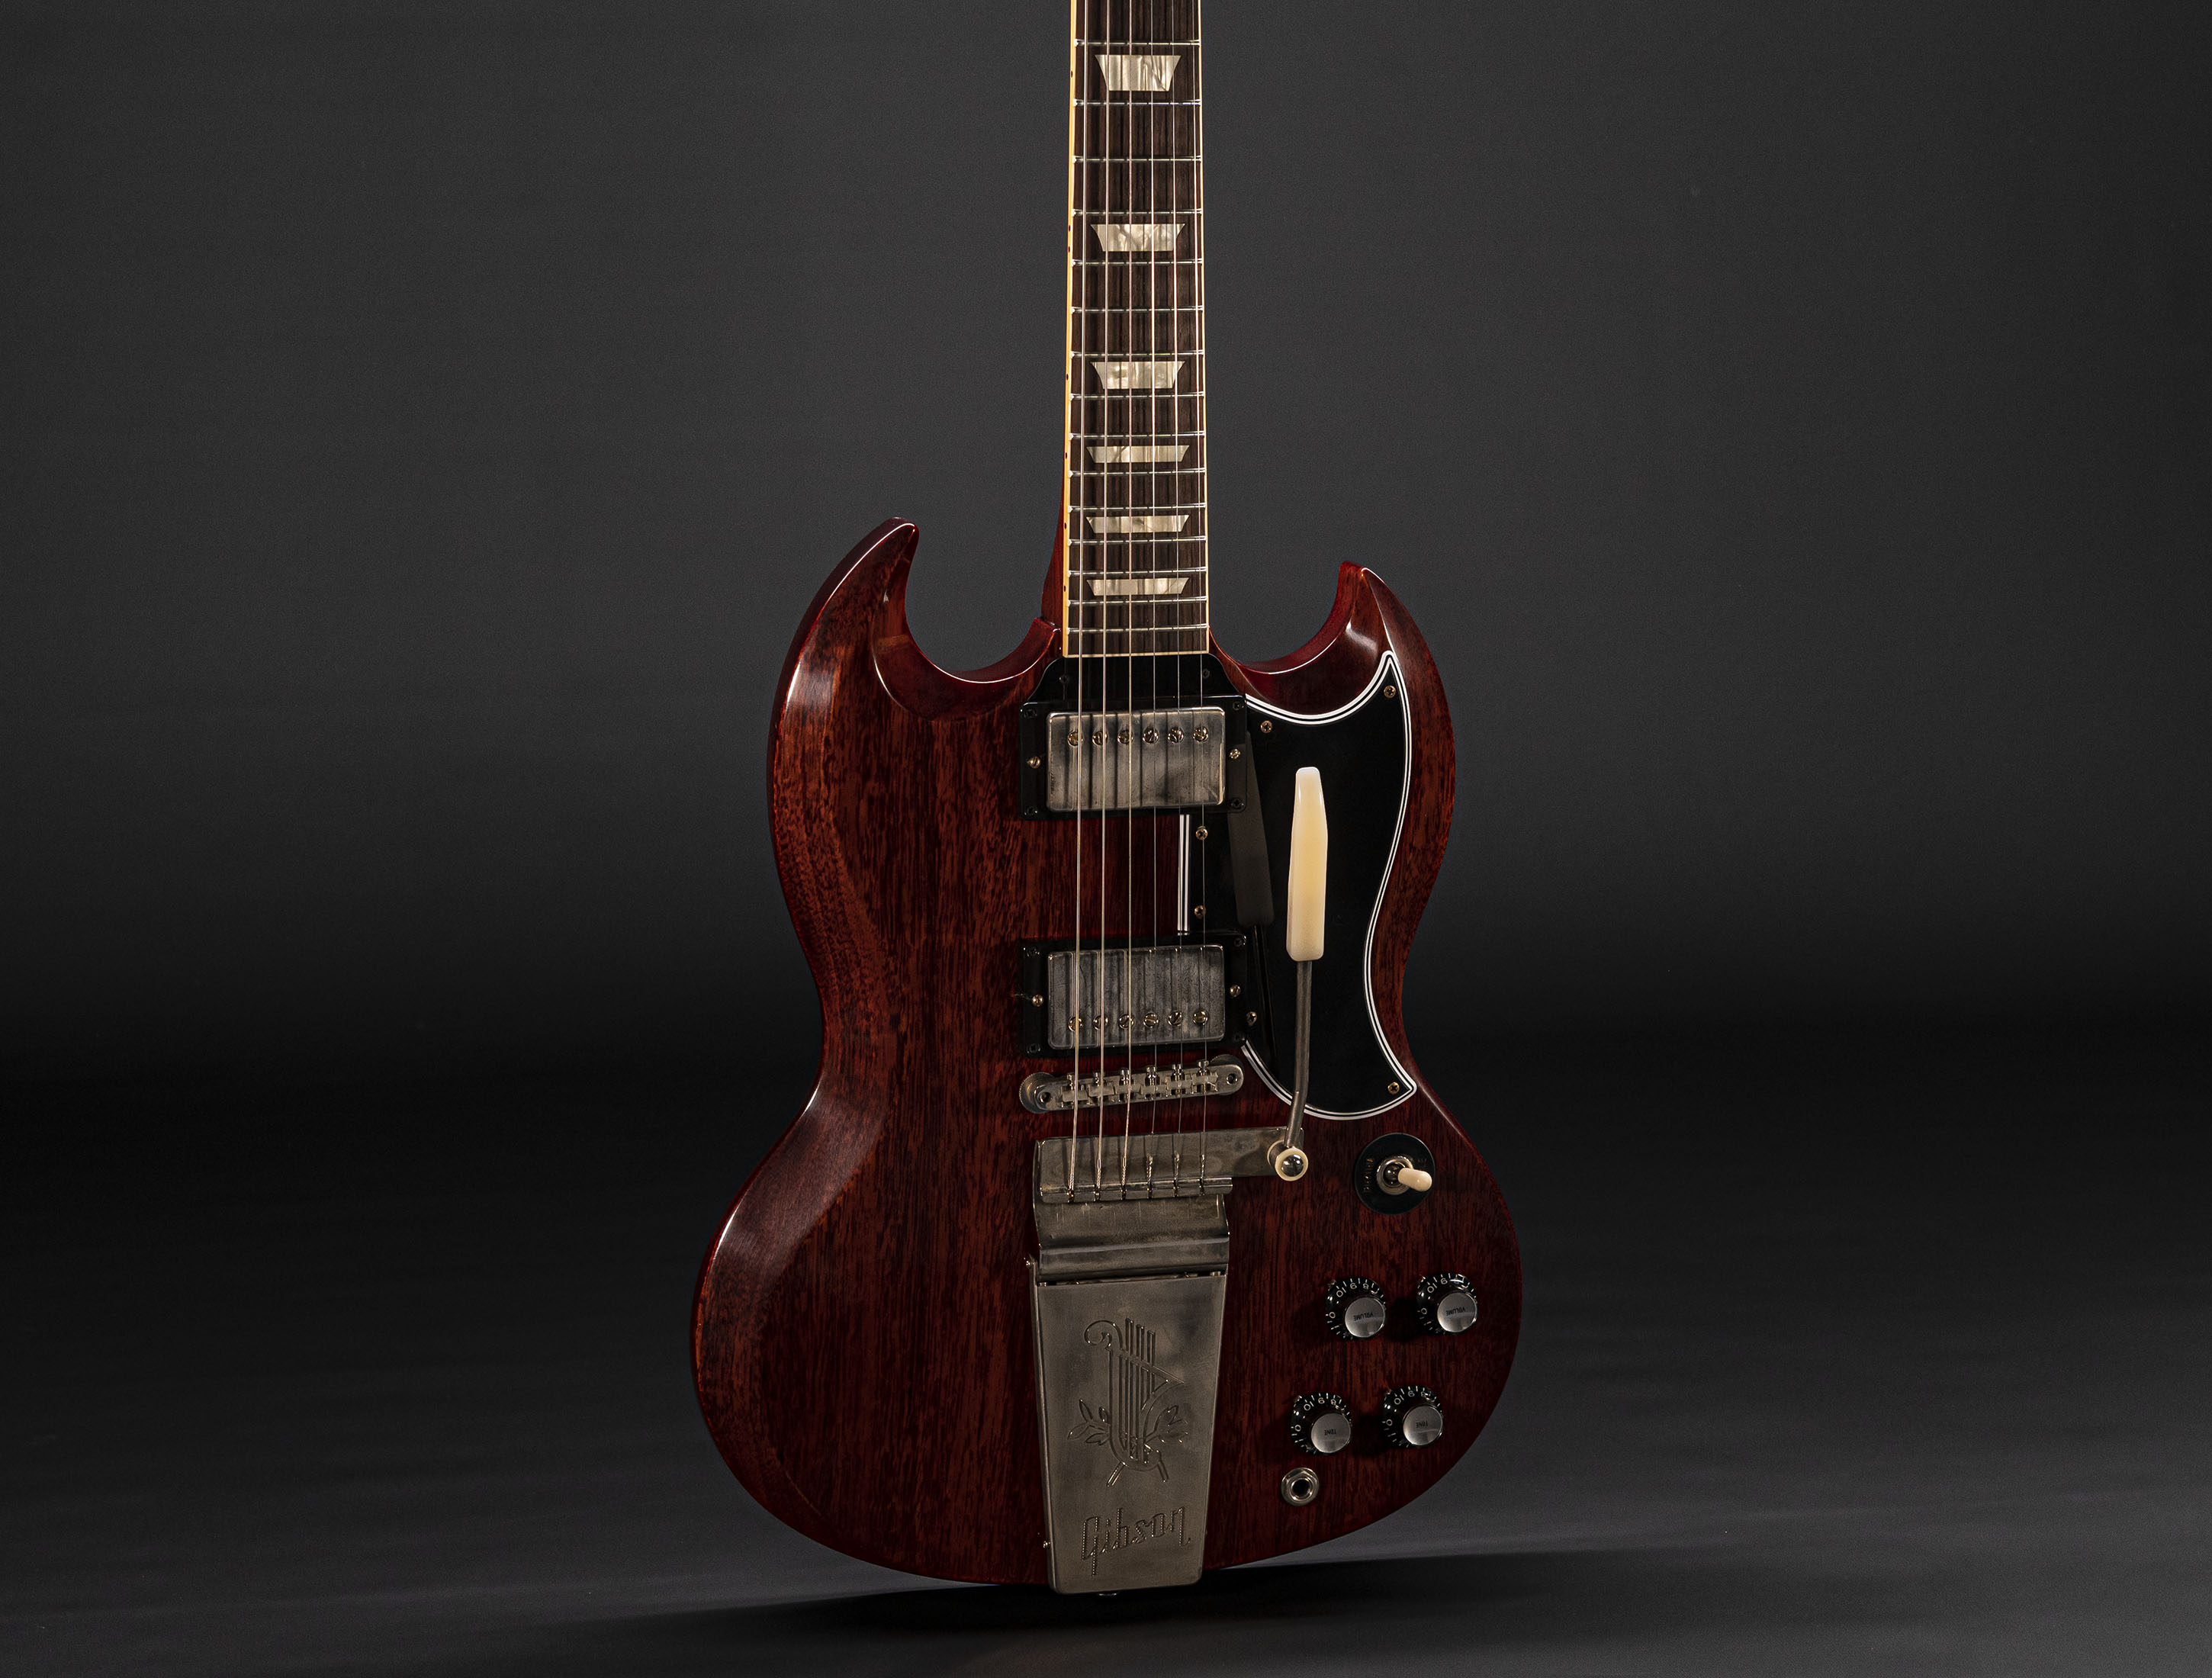 Gibson SG 1964 Standard Reissue Maestro Vibrola VOS Cherry Red